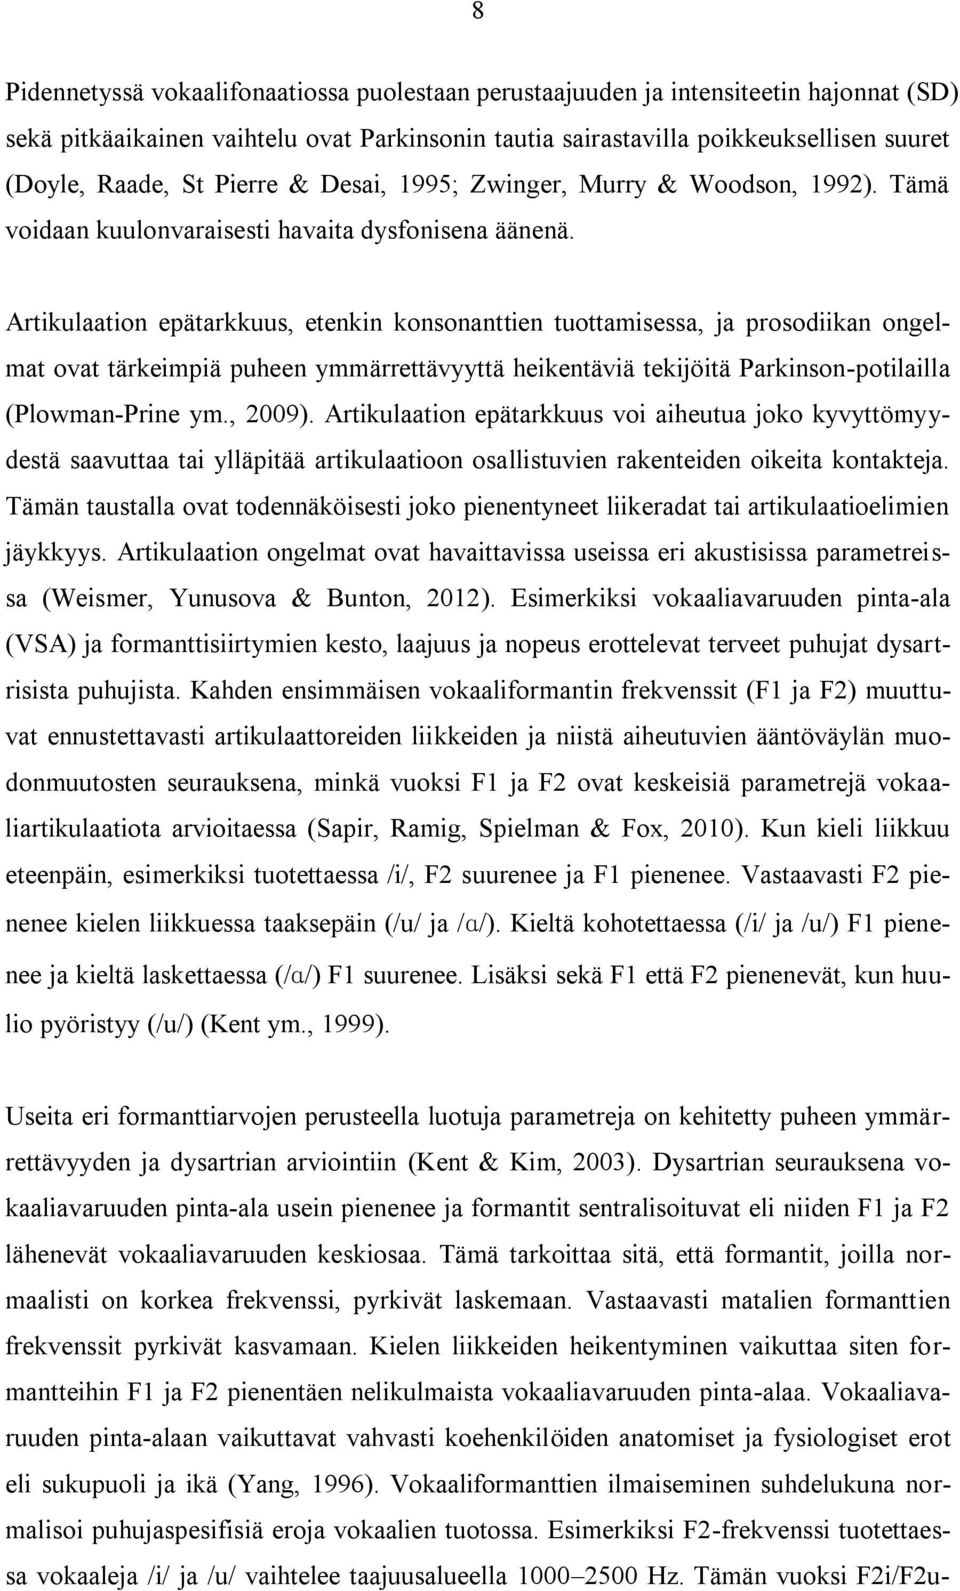 Artikulaation epätarkkuus, etenkin konsonanttien tuottamisessa, ja prosodiikan ongelmat ovat tärkeimpiä puheen ymmärrettävyyttä heikentäviä tekijöitä Parkinson-potilailla (Plowman-Prine ym., 2009).